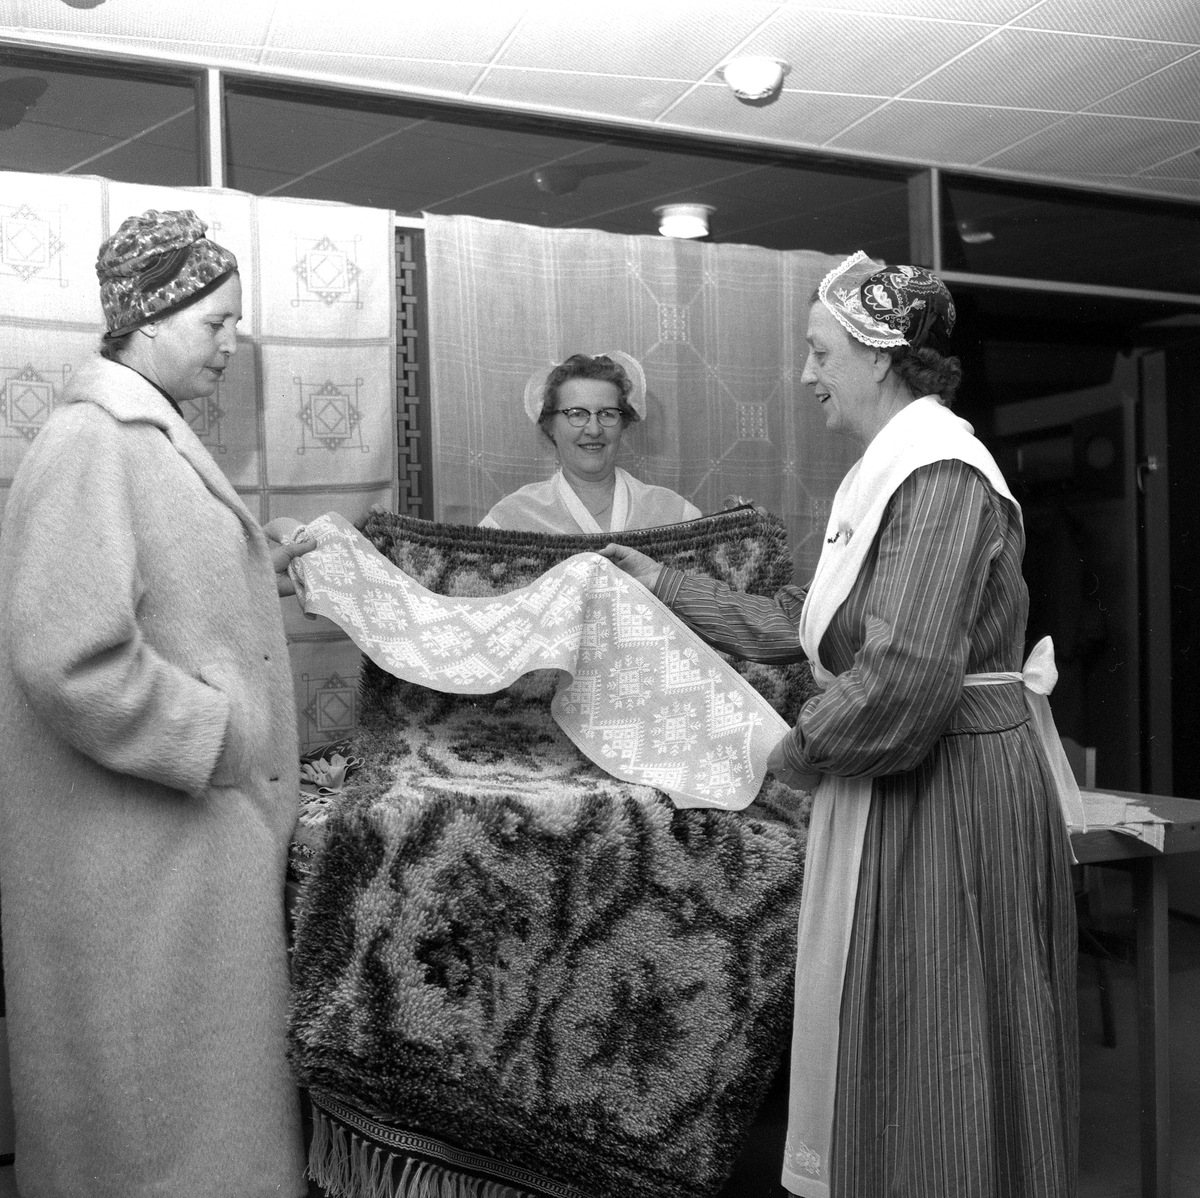 Textilutställning i Hantverkshallen.
30 september 1958.